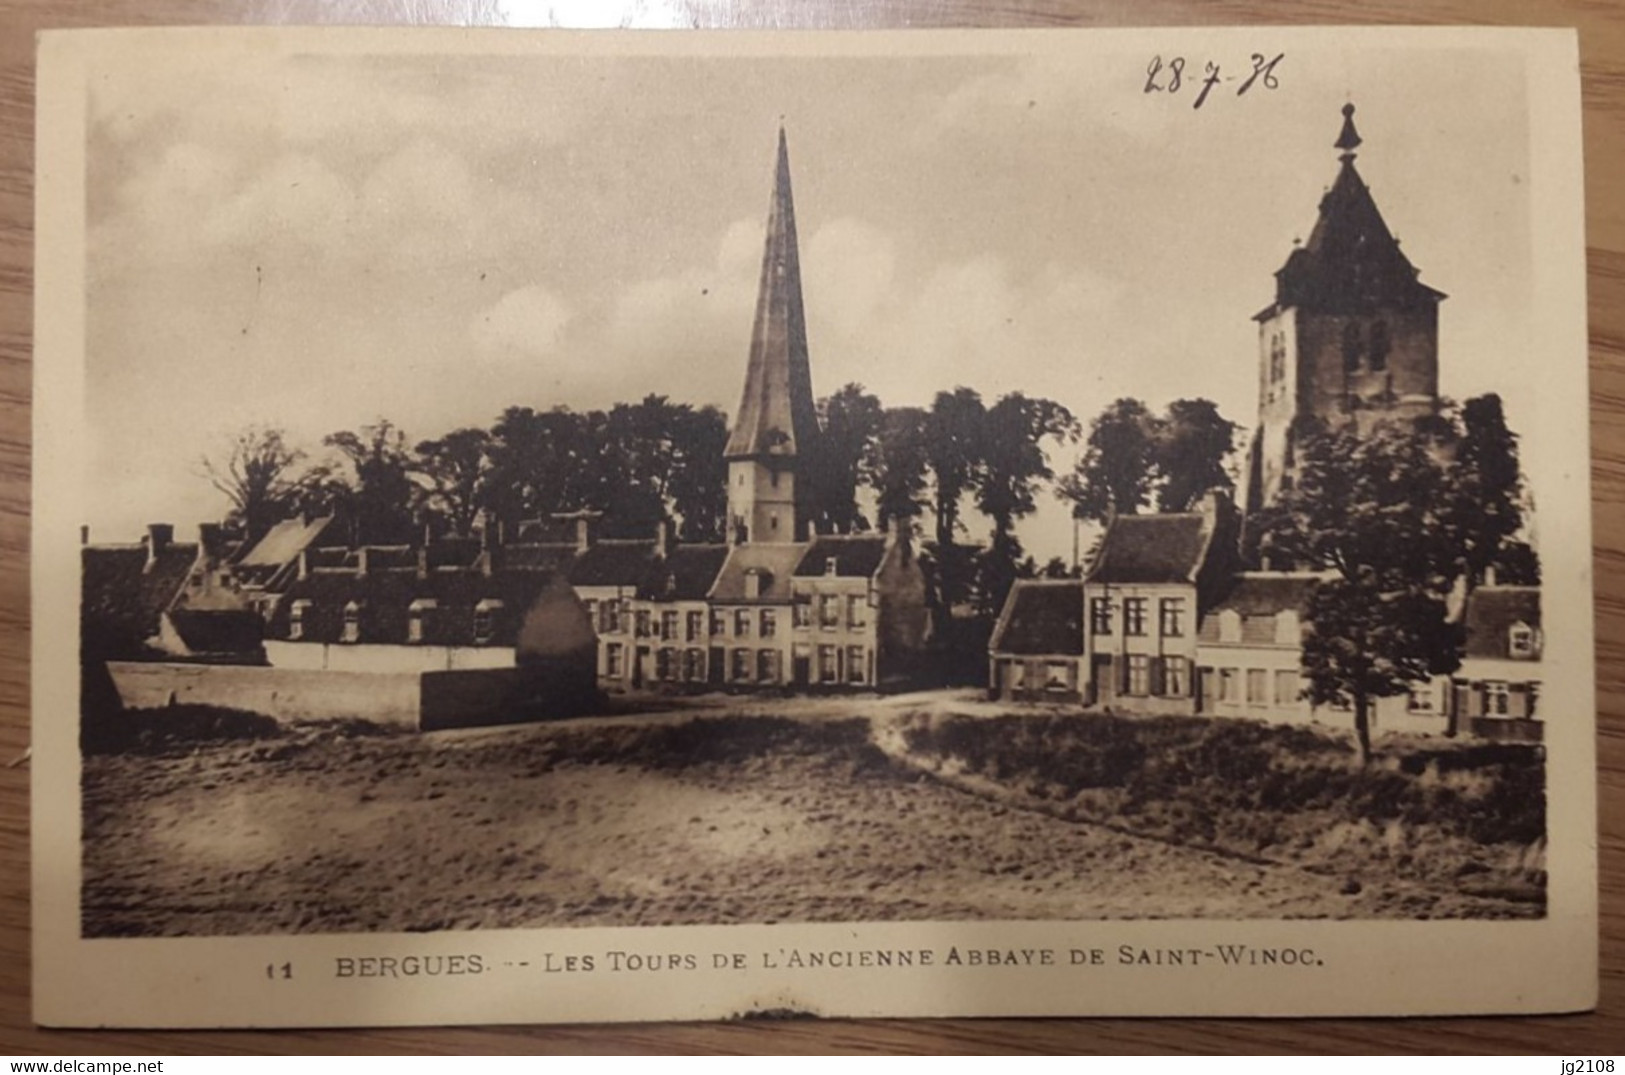 Carte Postale Bergues Les Tours De L'ancienne Abbaye De Saint Winoc 1936 - Bergues